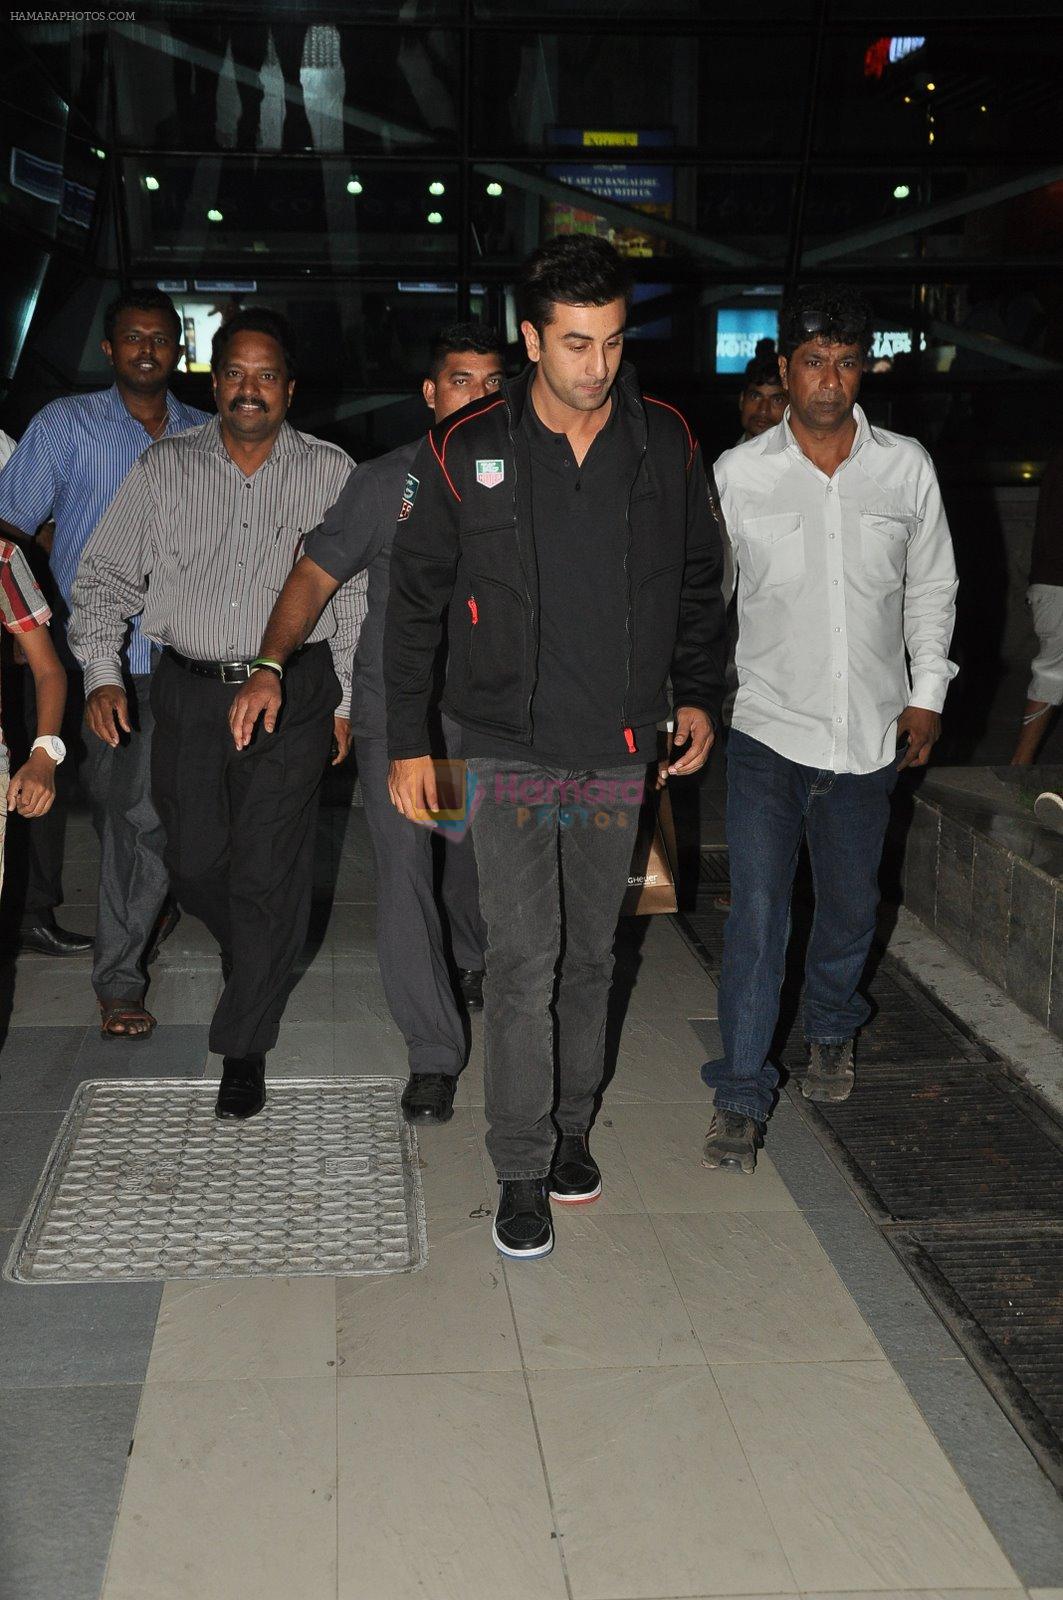 Ranbir Kapoor snapped at airport on 11th Nov 2014